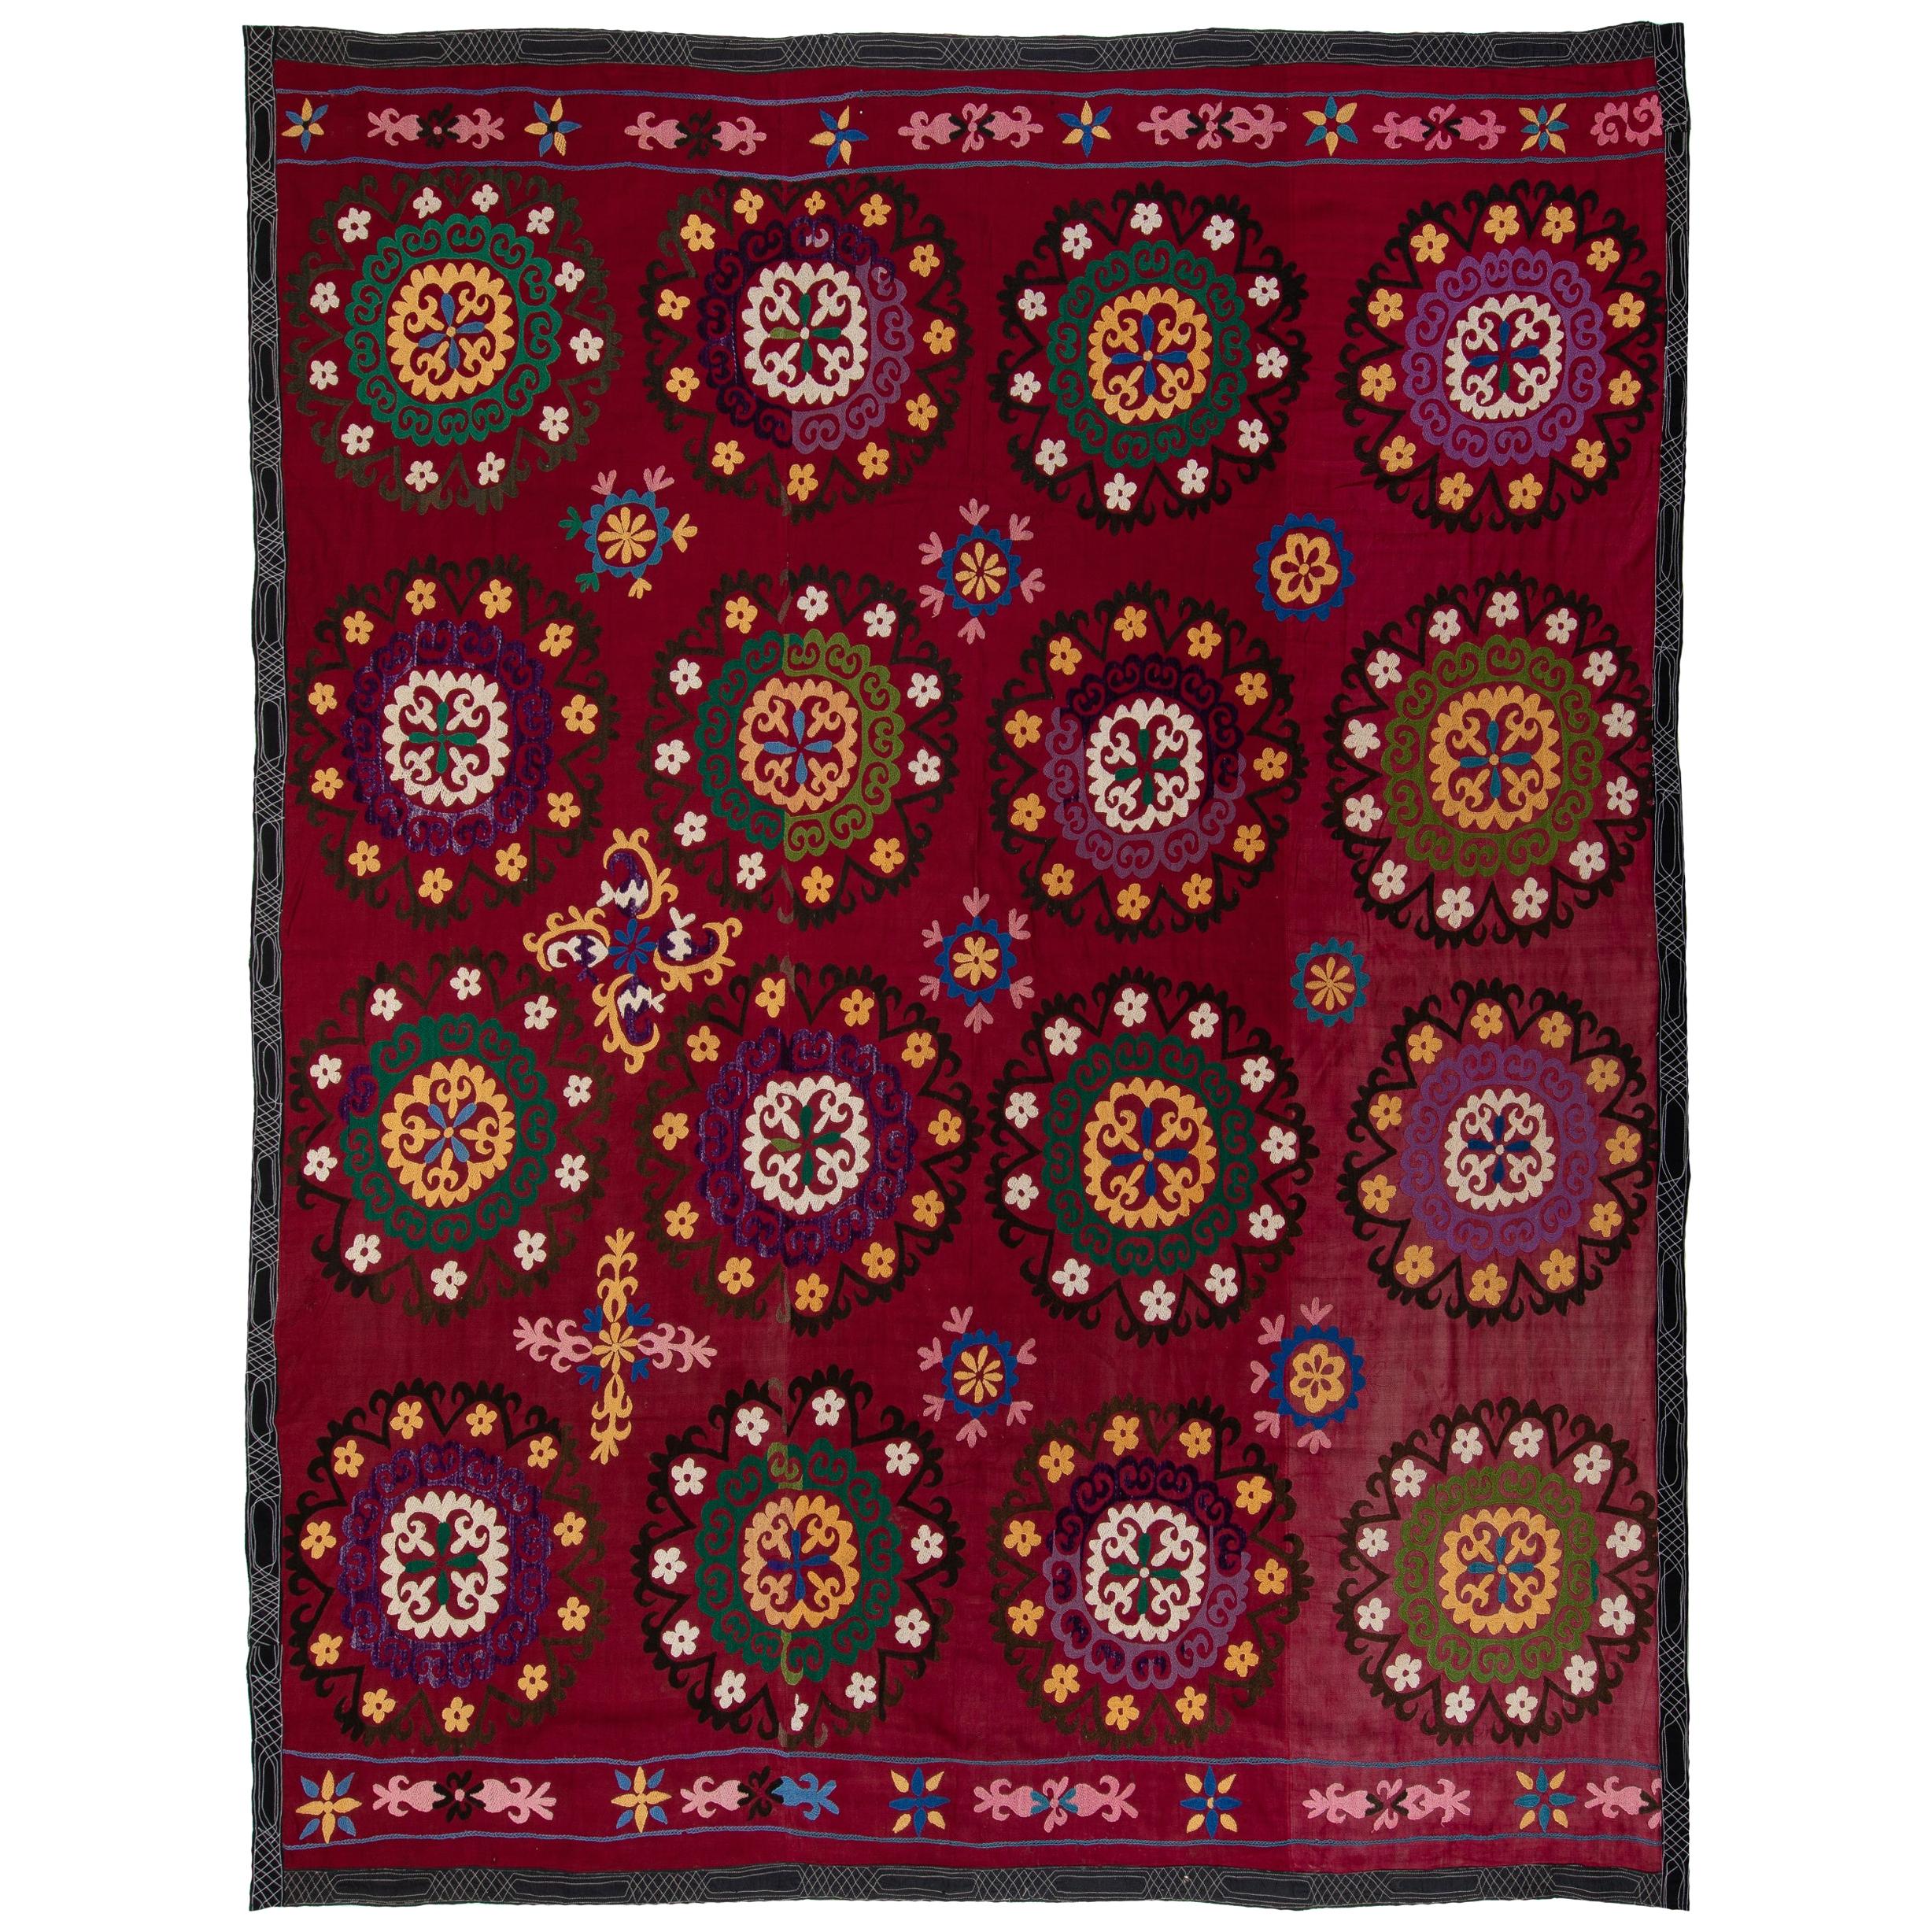 Textile Suzani Asie centrale brodé en coton et soie, tenture murale en tissu Suzani de 6,8 x 7,8 m